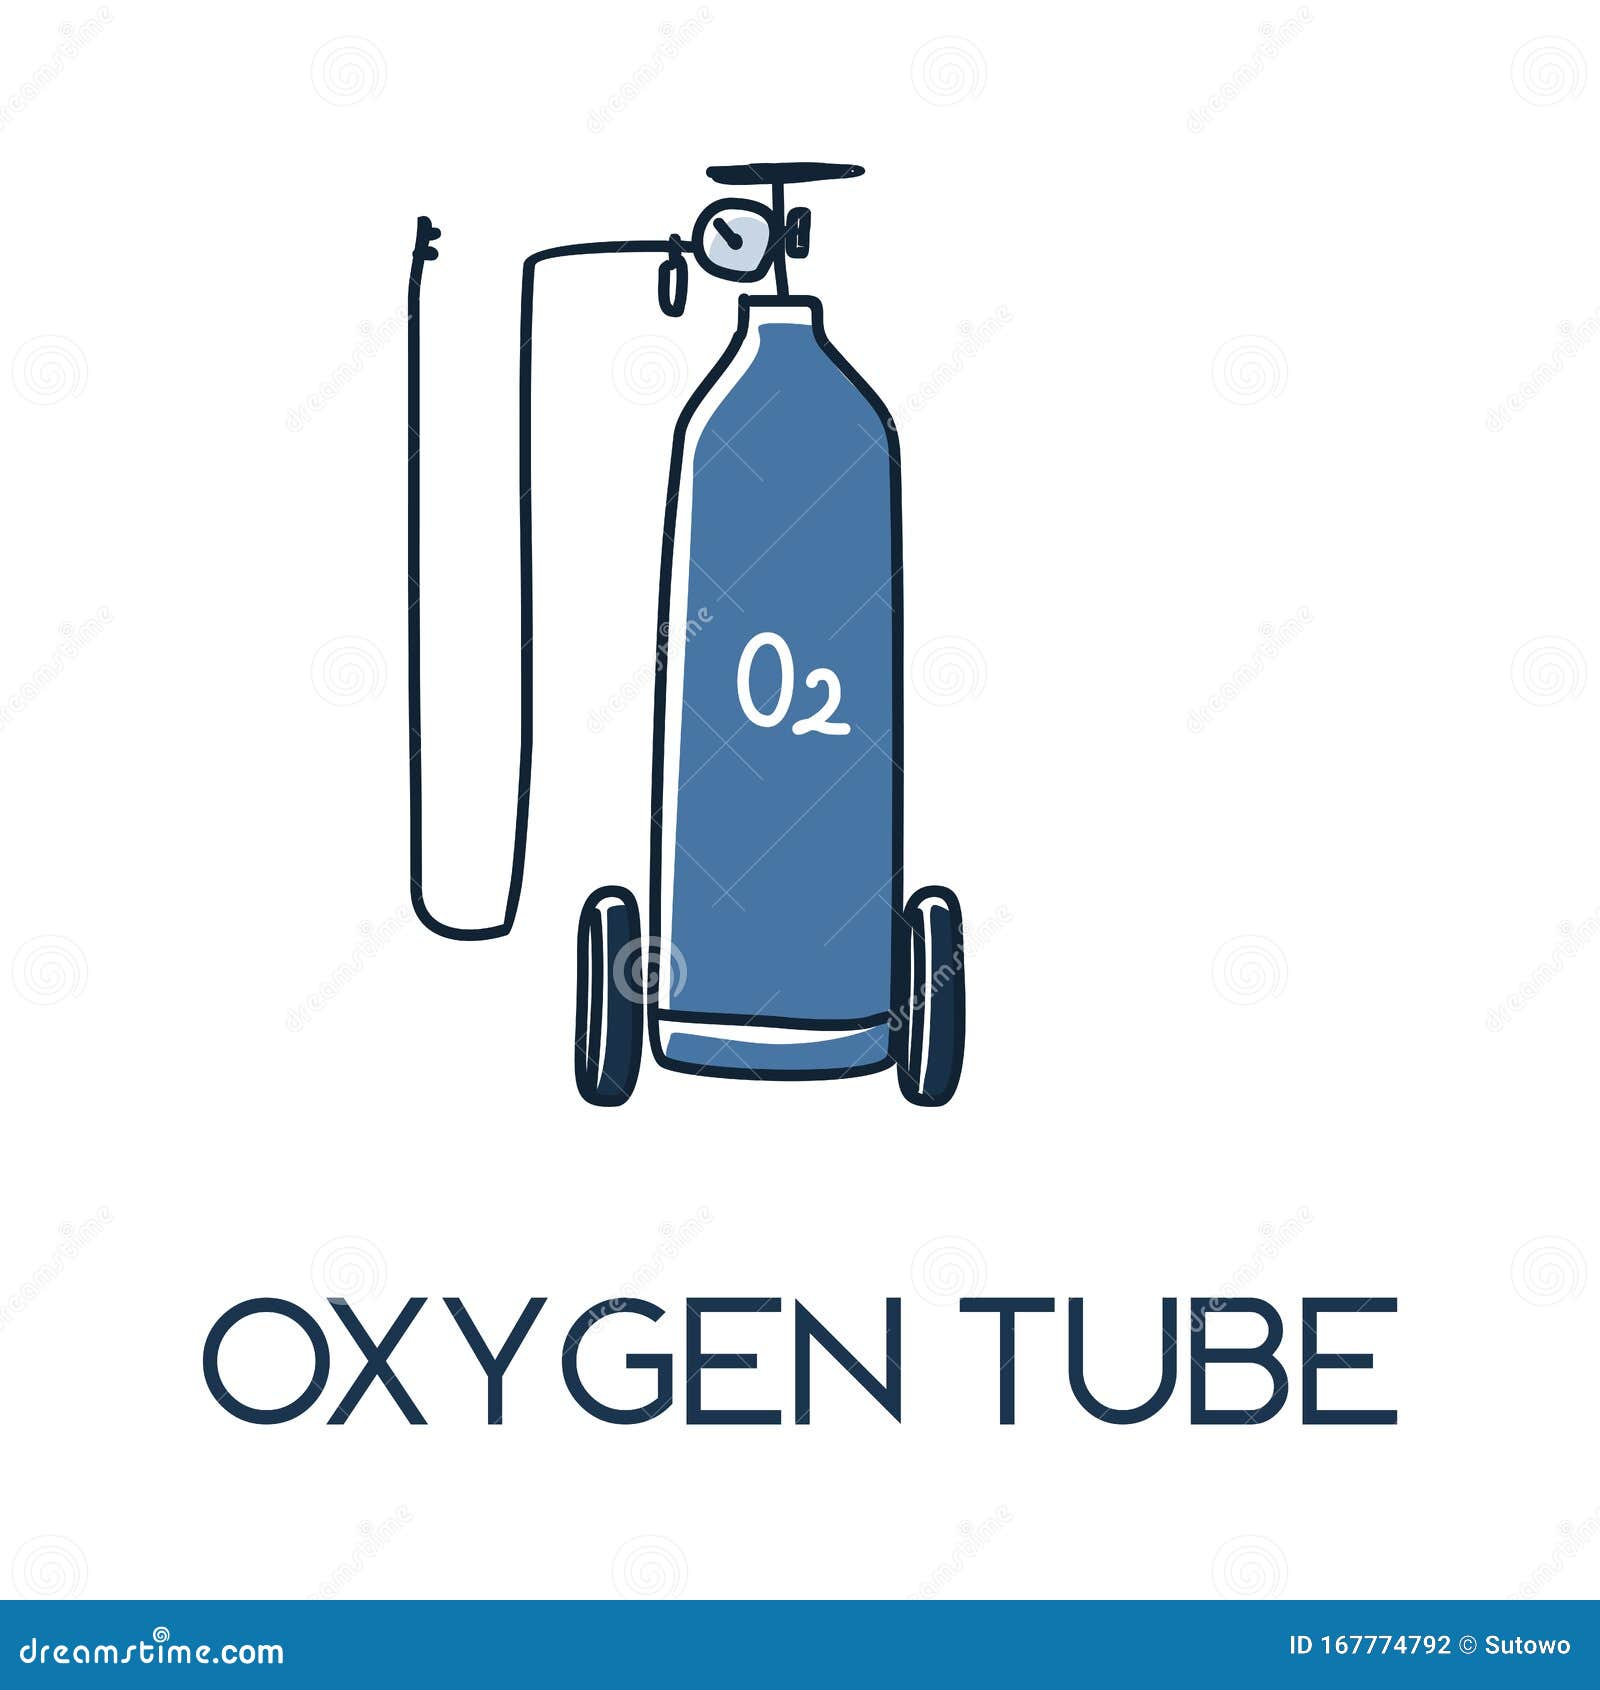 Tank portable set up oxygen Oxygen Tank